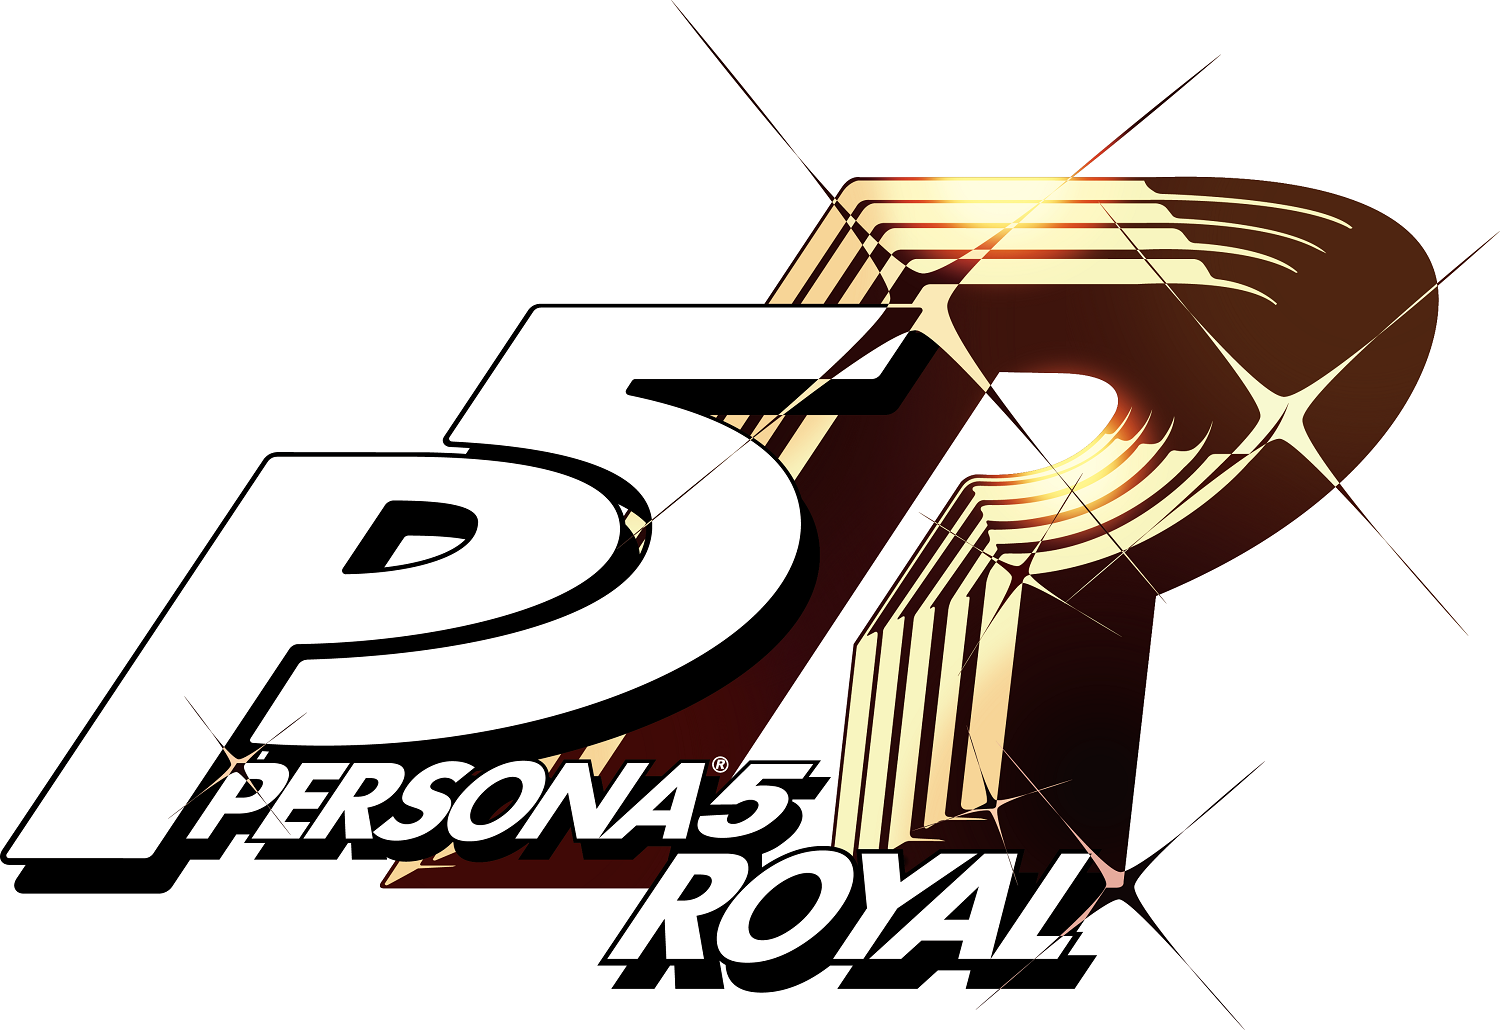 Persona 5 Royal será lançado oficialmente no Brasil